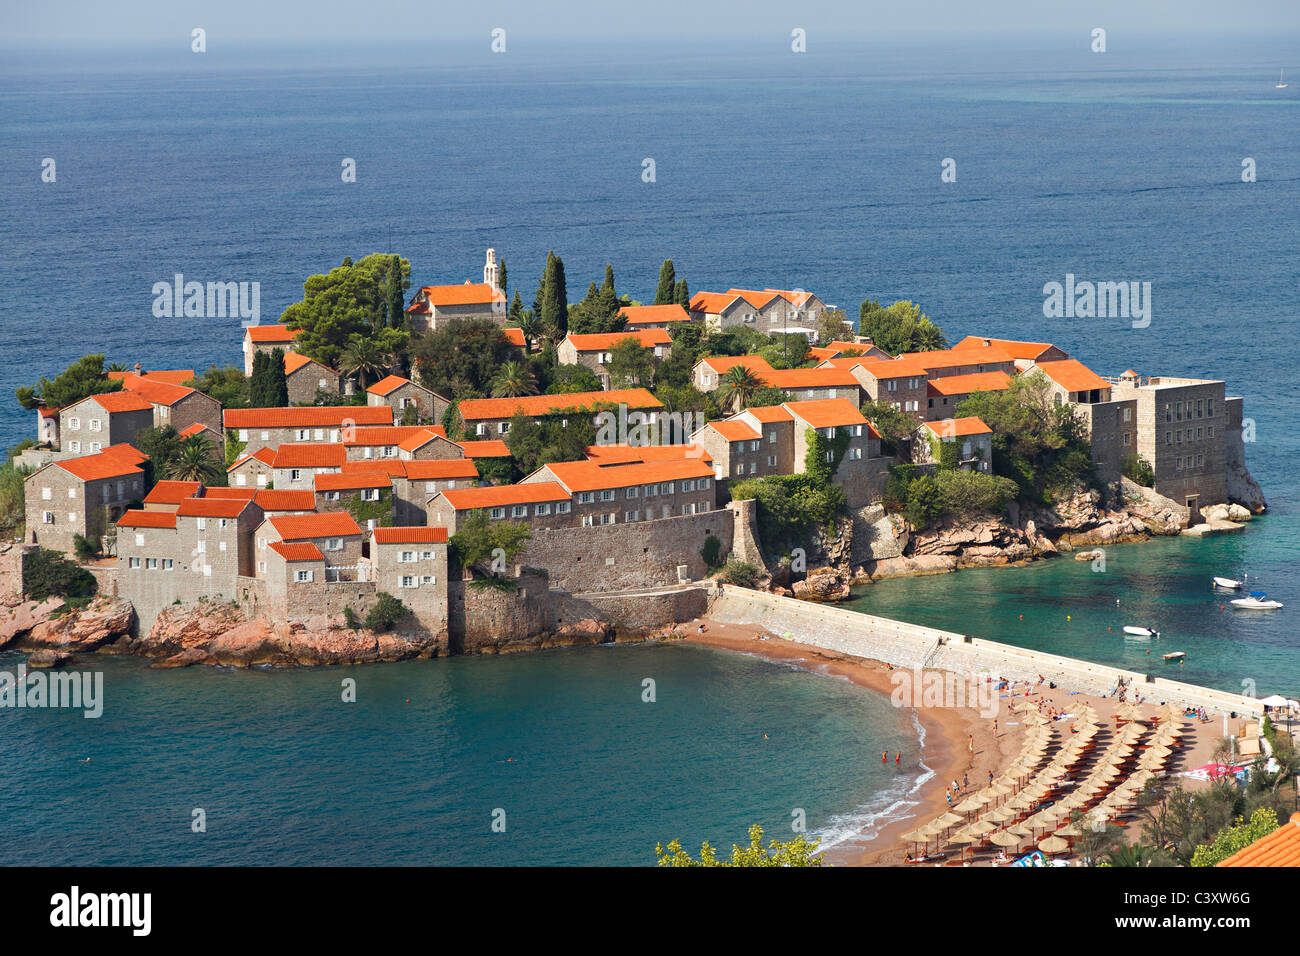 Insel von Sveti Stefan an der adriatischen Küste in Montenegro. Es ist rot überdachten alten Häuser wurden von Piraten, jetzt als Hotel genutzt Stockfoto